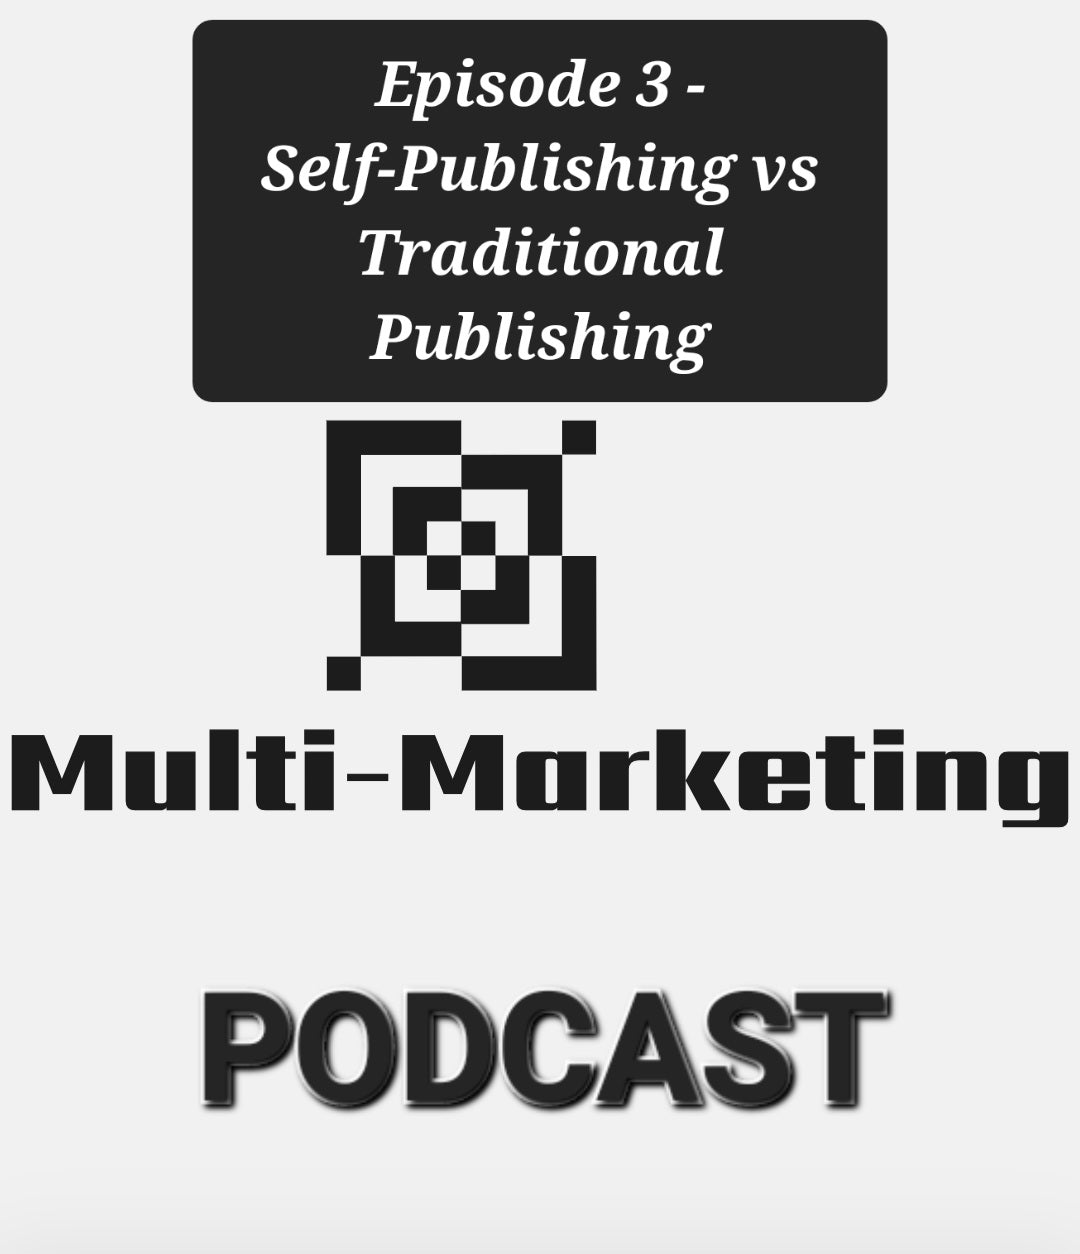 Multi-Marketing Podcast - Episode 3: Self-Publishing vs Traditional Publishing